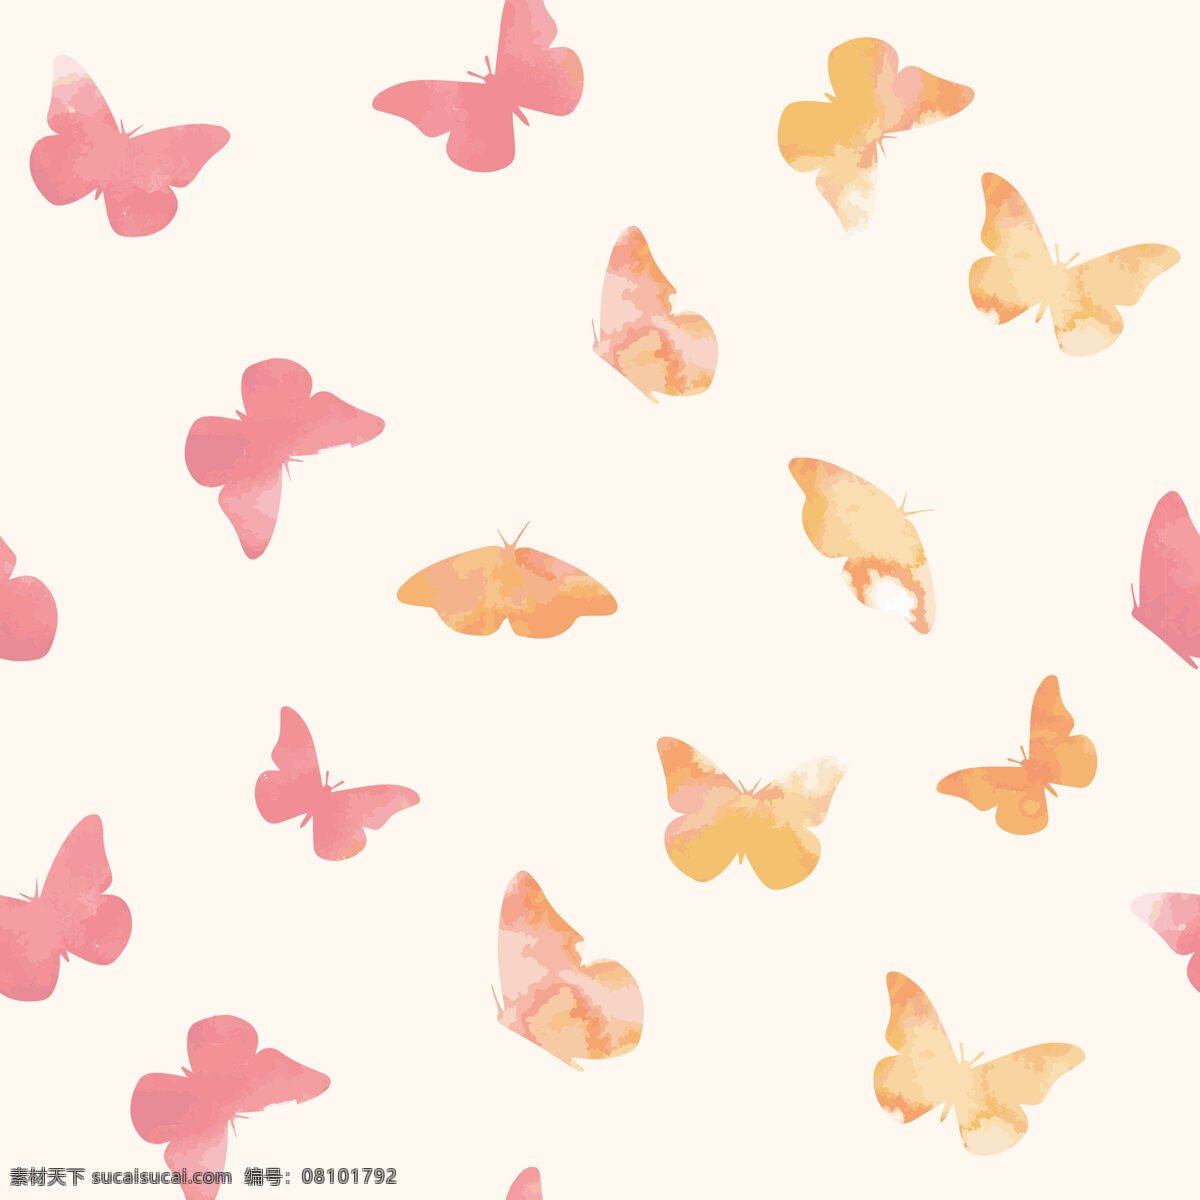 浪漫 清新 蝴蝶 壁纸 图案 装饰设计 浅粉色调 壁纸图案 粉色蝴蝶 橙黄色蝴蝶 水粉画